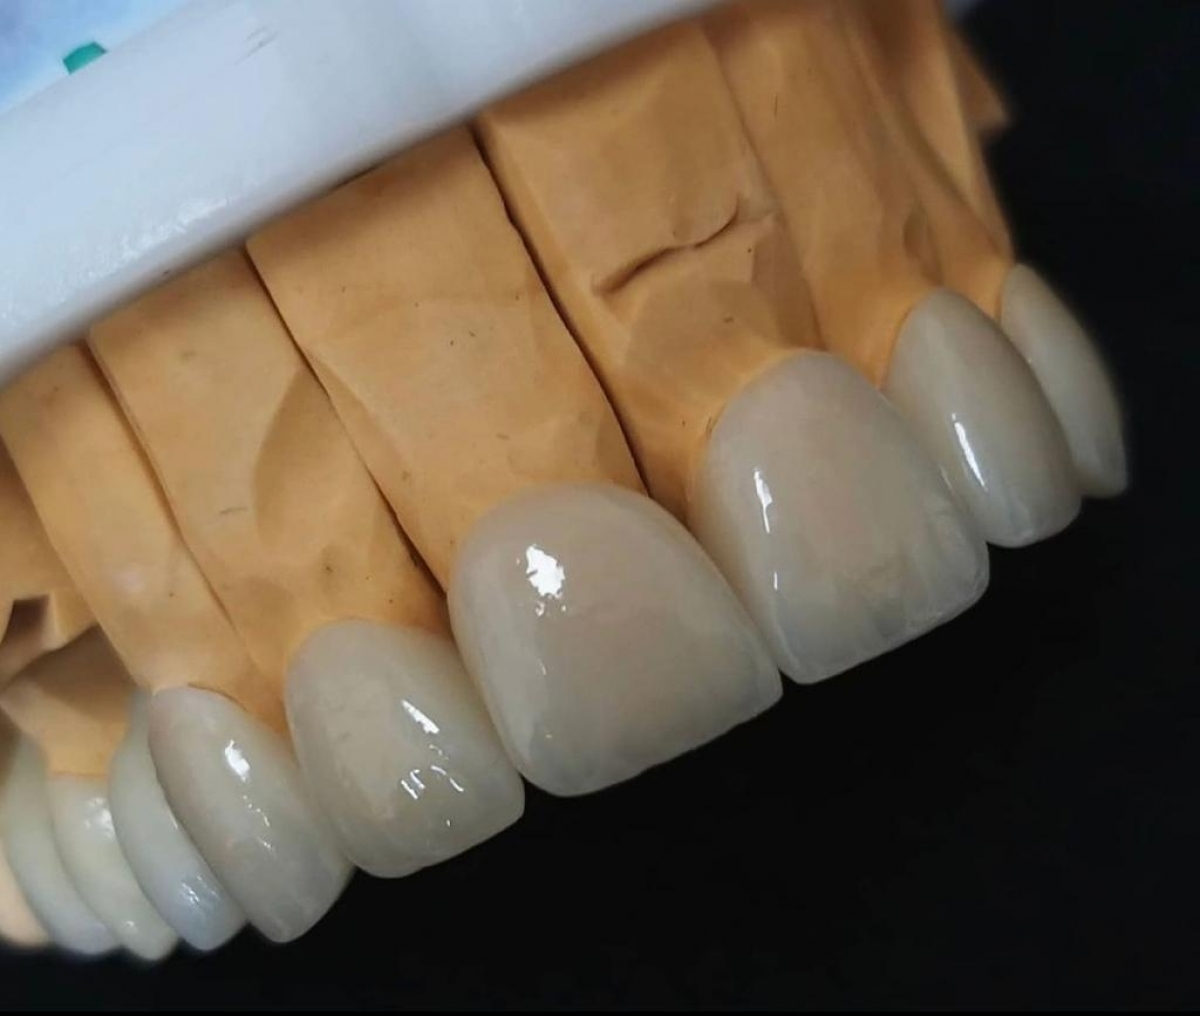 Laboratorio de Protese Dentaria